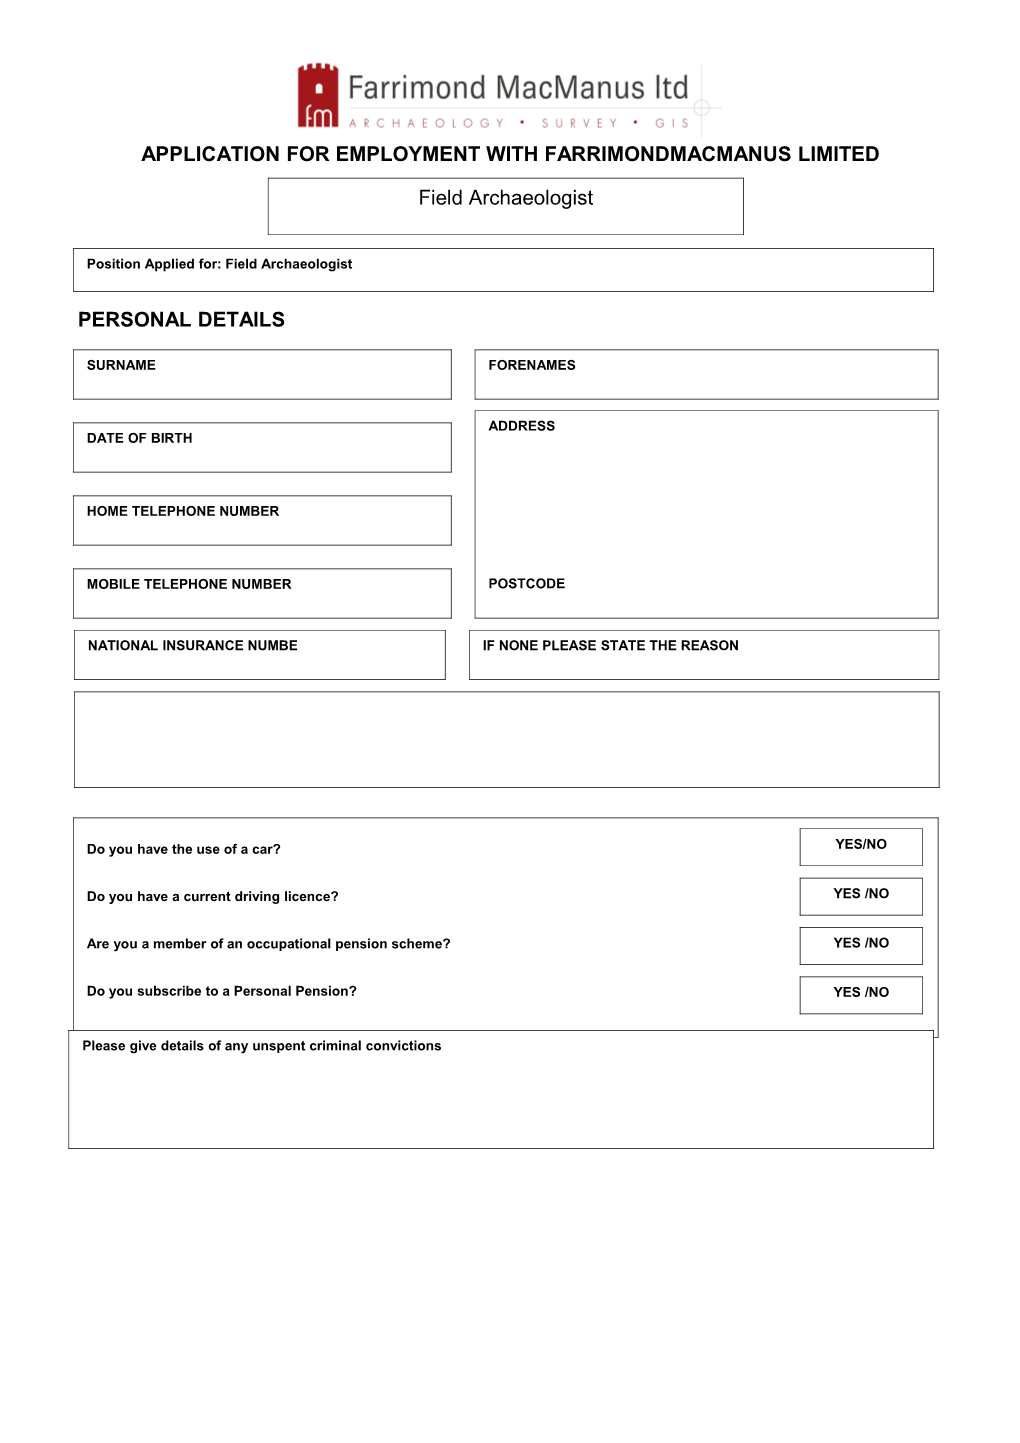 FMM Employment Application Form